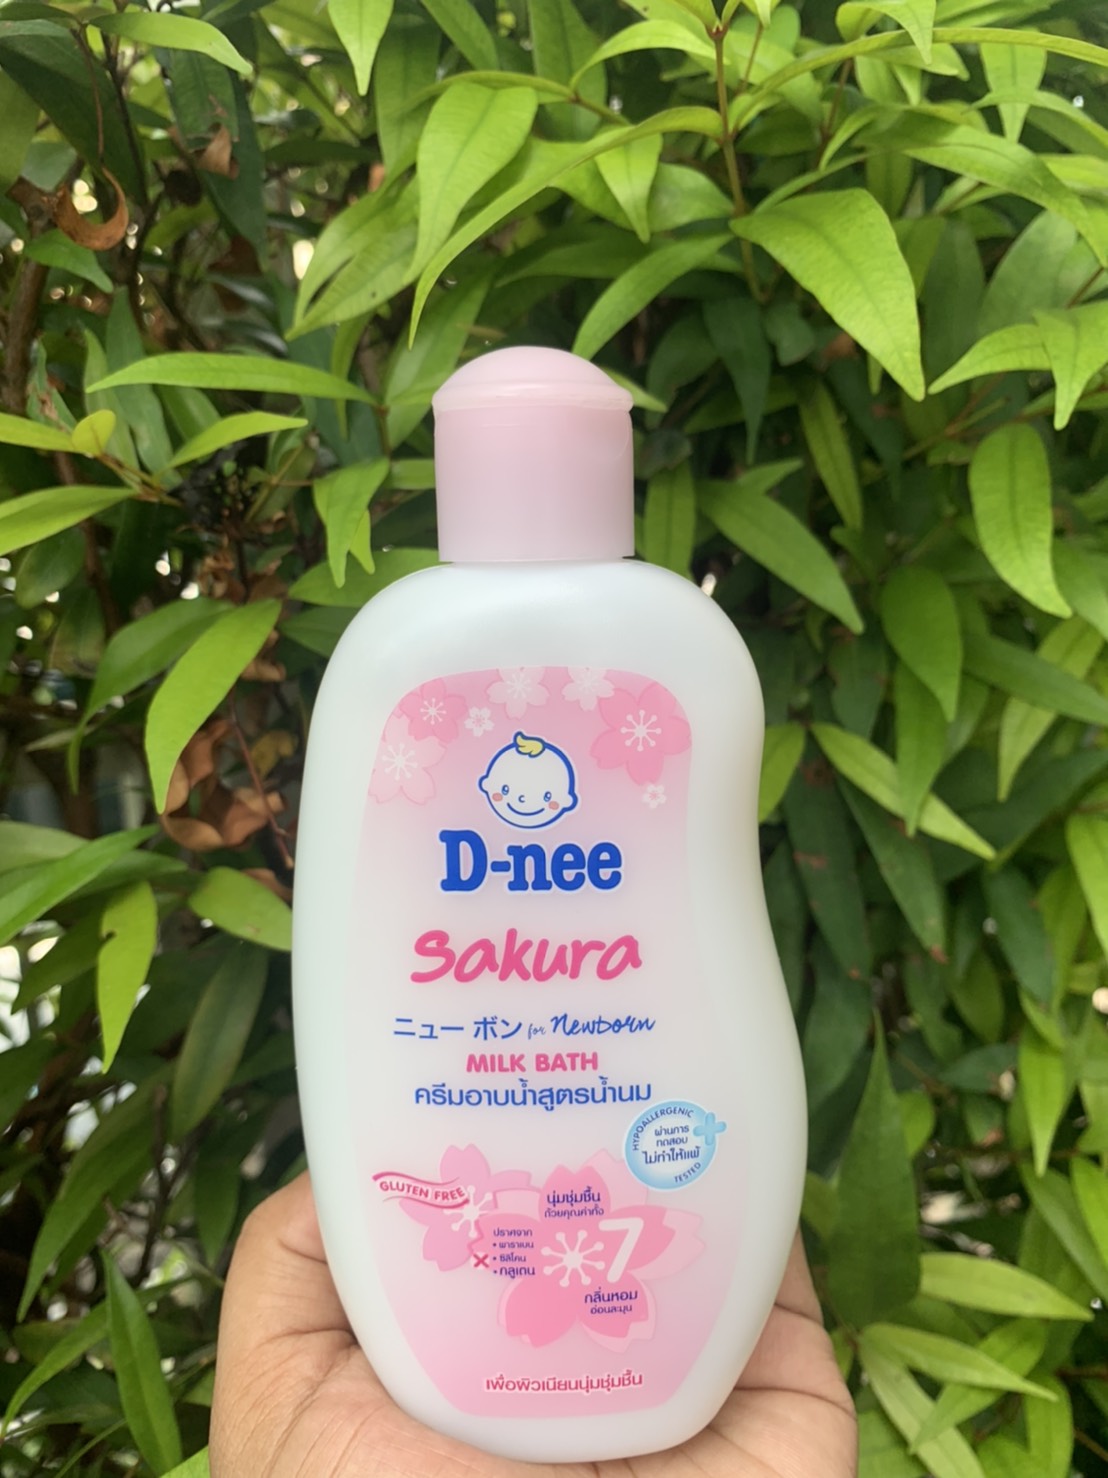 D-nee Sakura Milk Bath / ดีนี่ ครีมอาบน้ำ สูตรน้ำนม กลิ่นซากุระ ขนาด 200 มล.